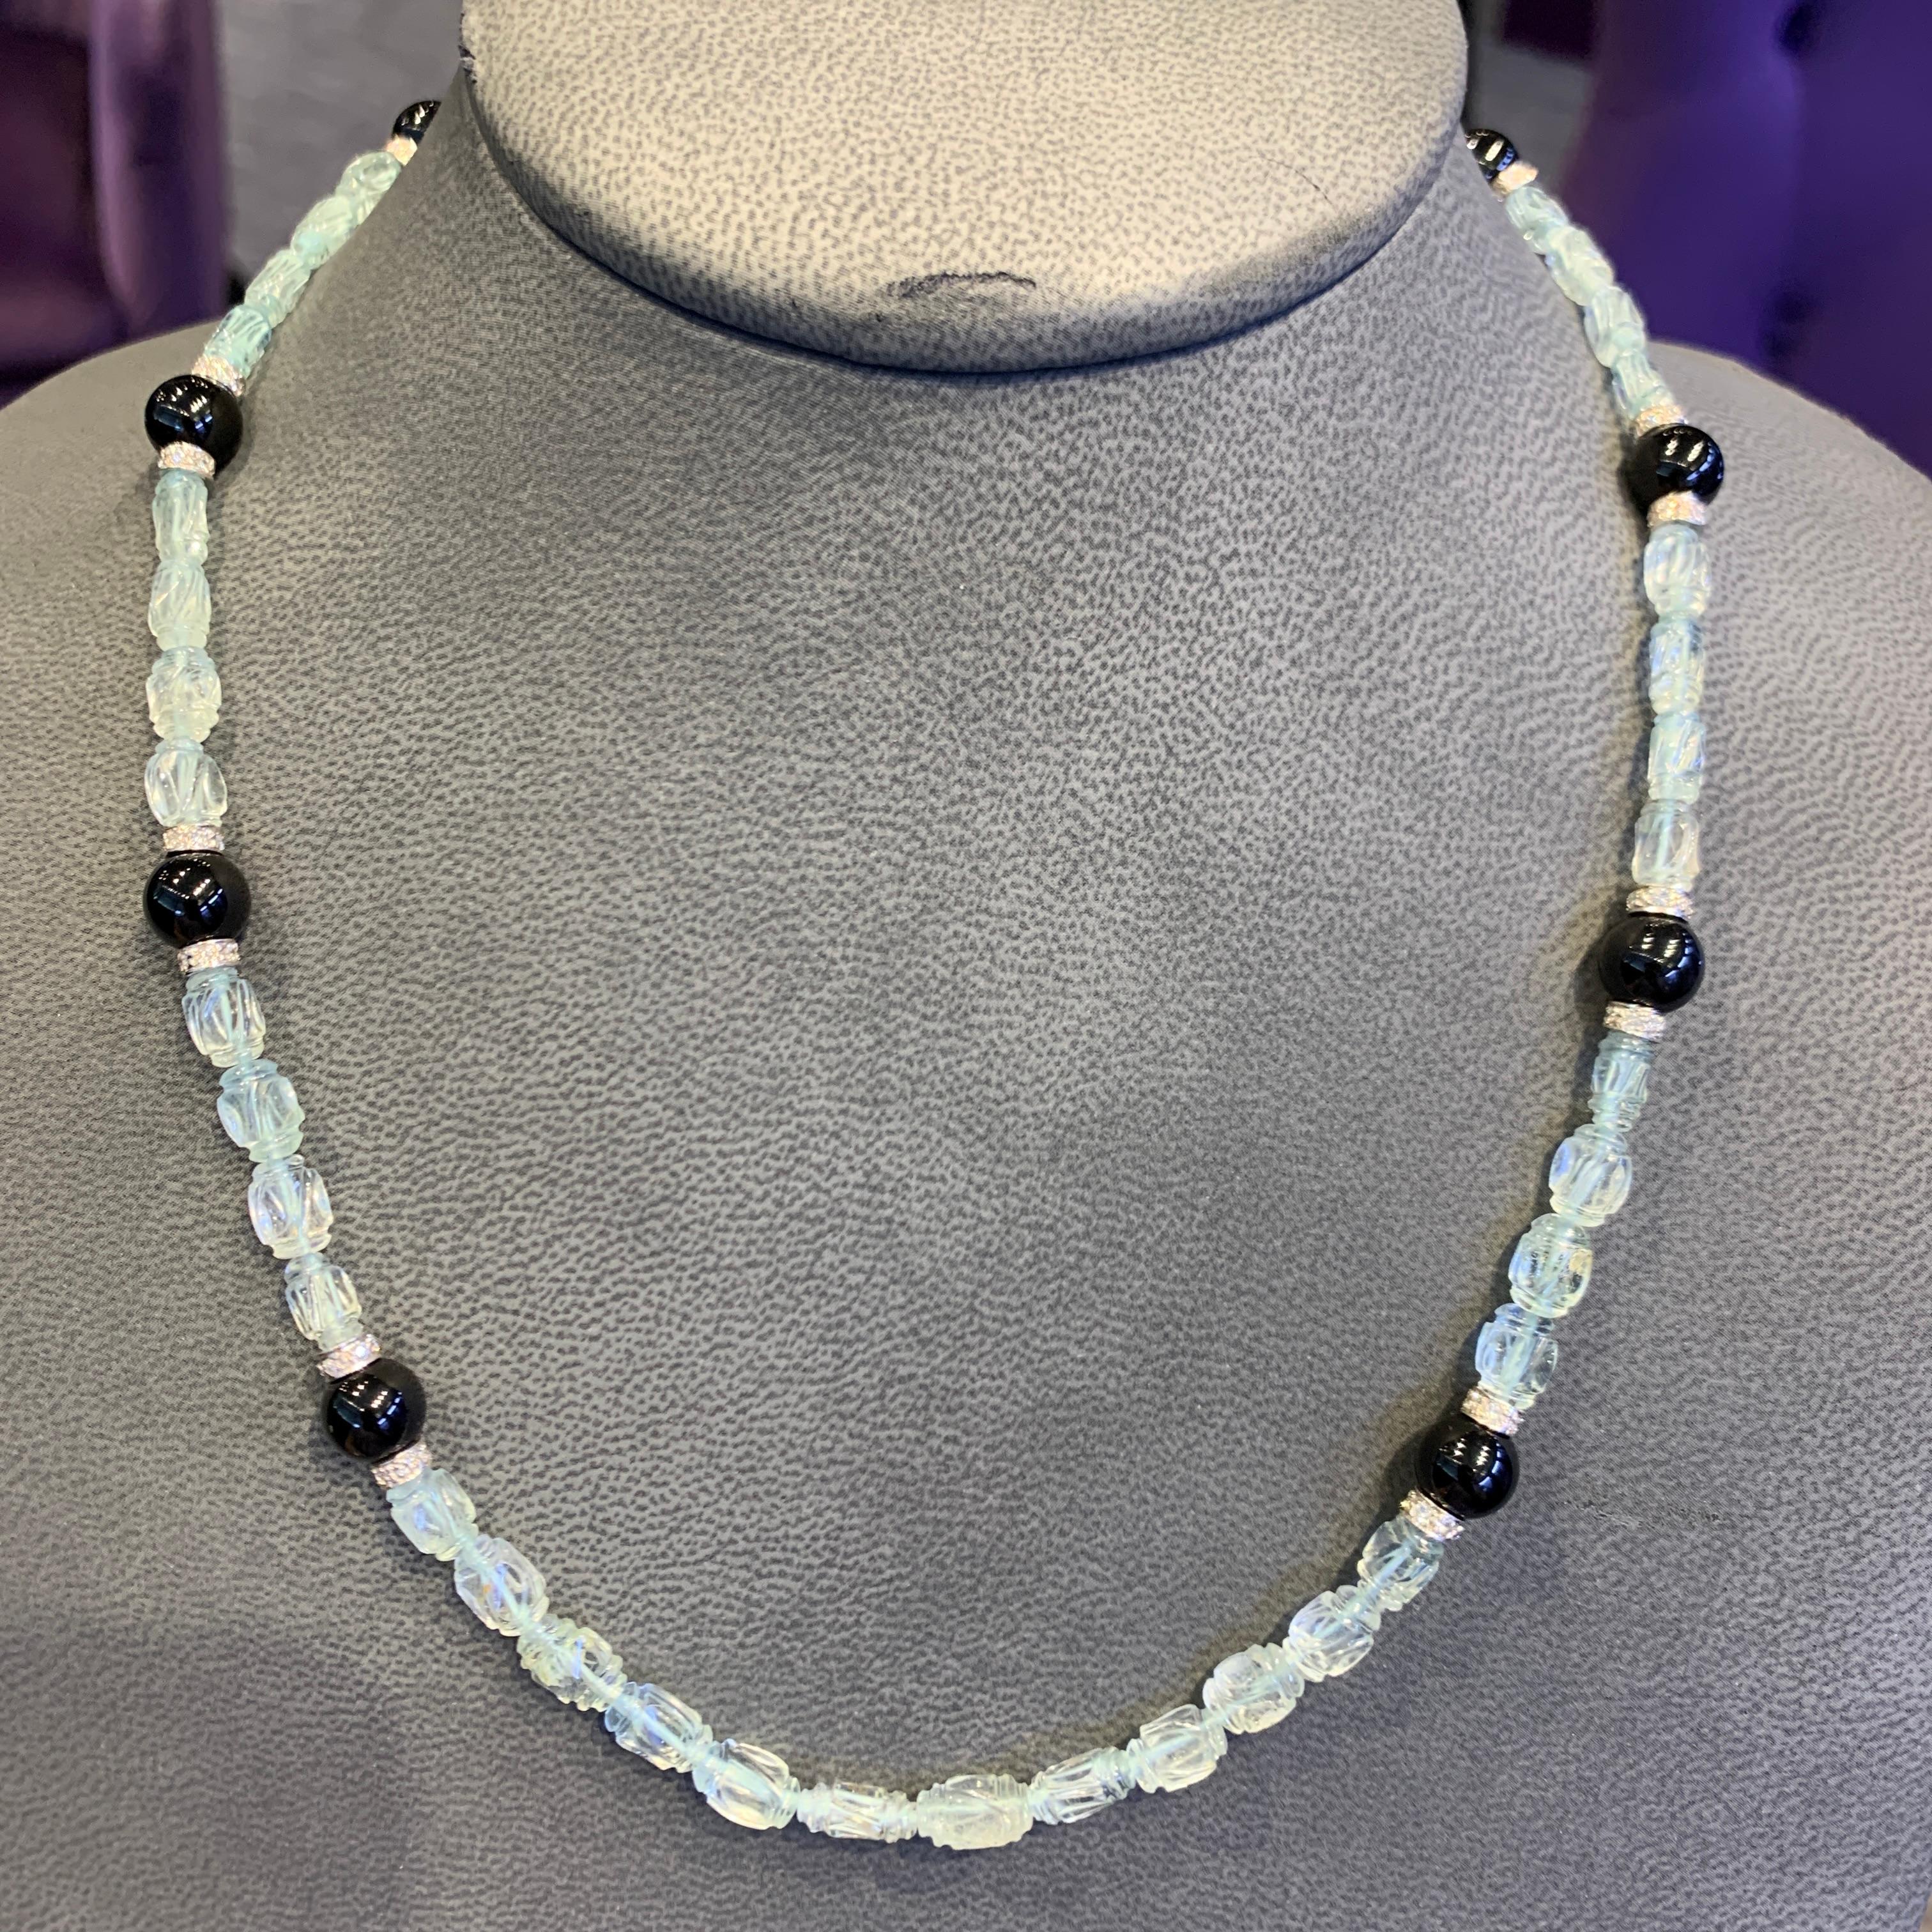 Collier de perles d'aigue-marine et d'onyx sculptées 

Collier composé de perles d'aigue-marine taillées et de perles d'onyx, avec entretoises en or blanc 14 carats et fermoir serti de diamants ronds taillés.

Longueur : 20